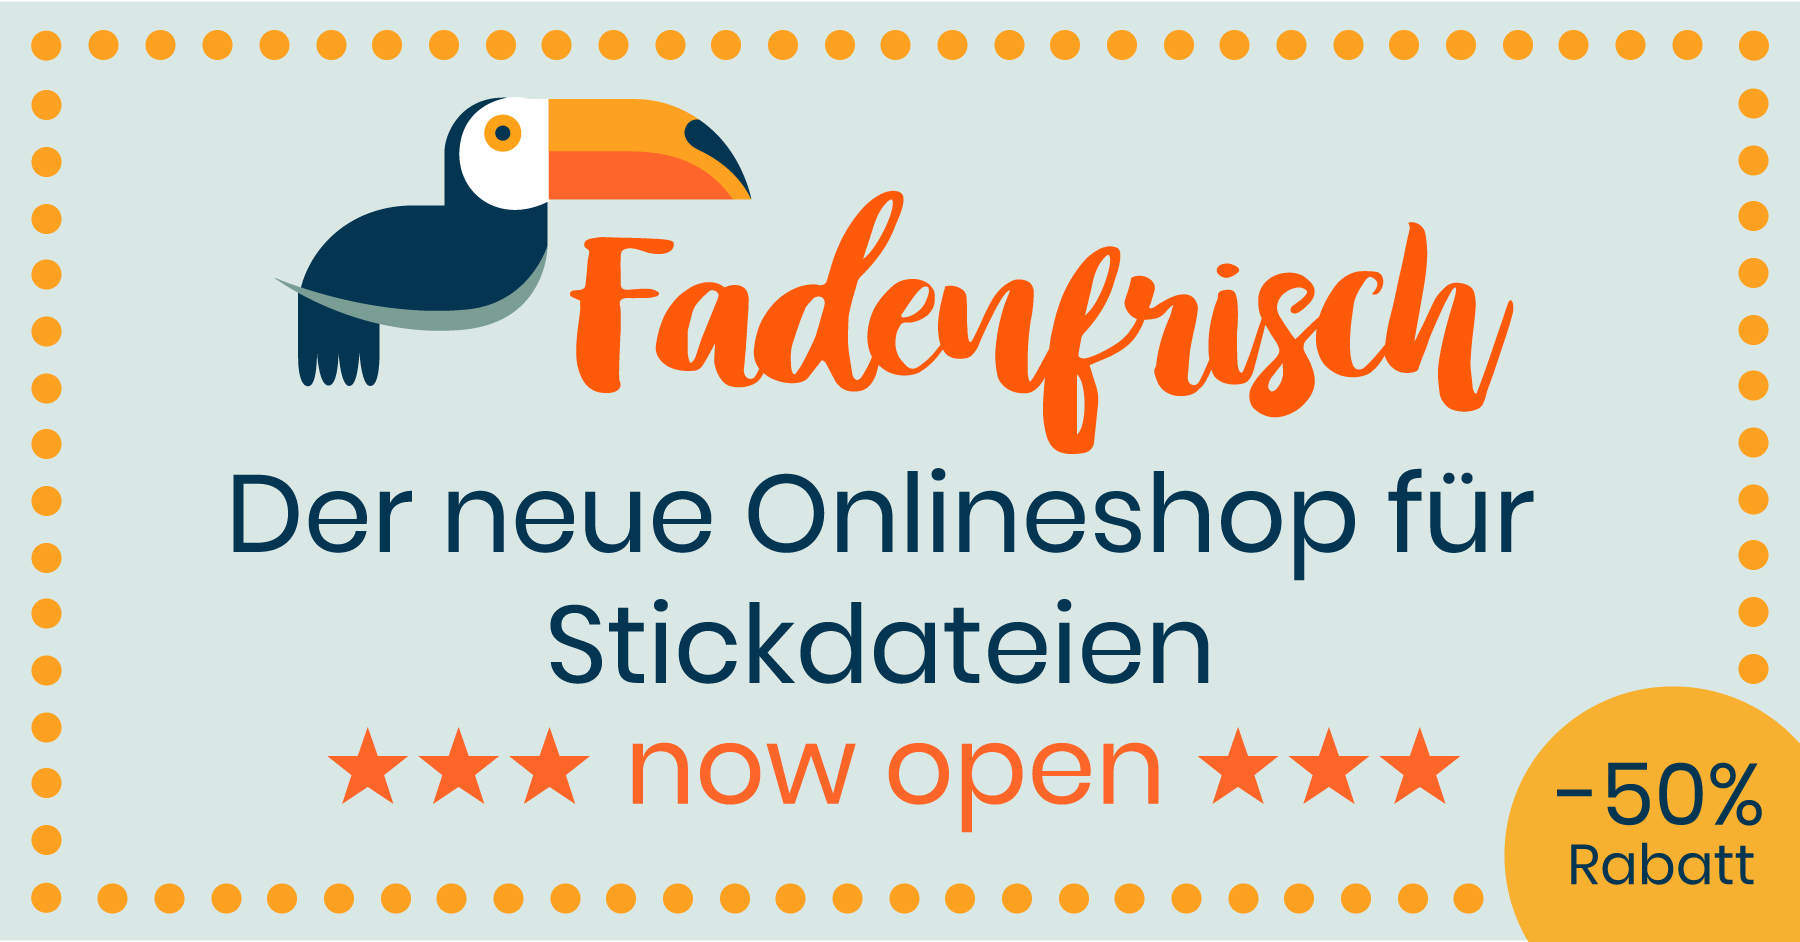 (c) Fadenfrisch.com